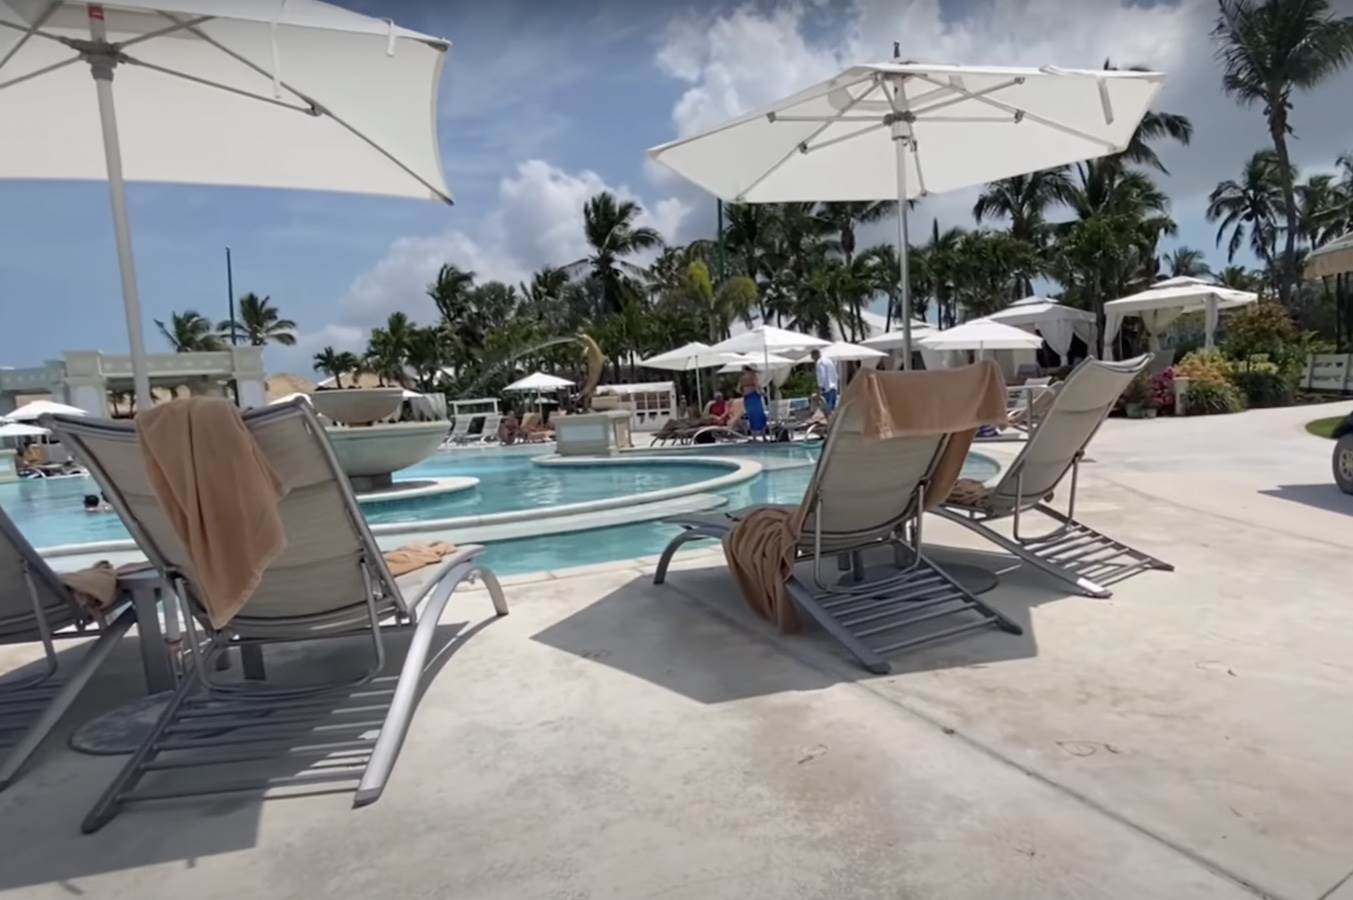  Pronađena tela turista u luksuznom letovalištu na Bahamima 